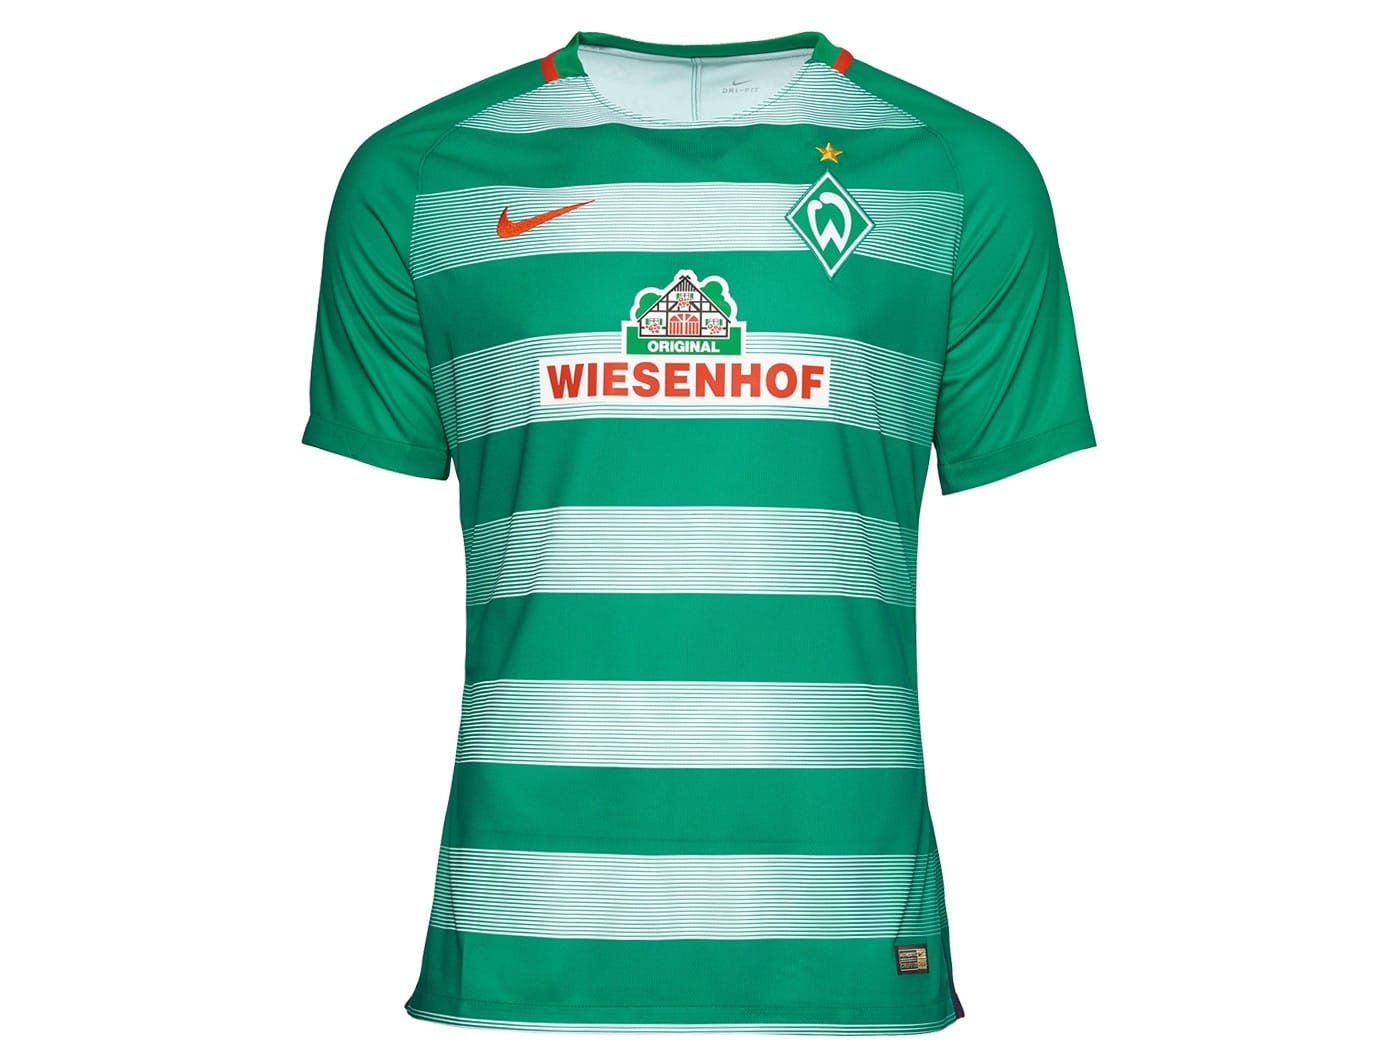 Werder Bremen setzt in dieser Saison auf zwei unterschiedliche Grüntöne, die sich in abwechselnd wiederkehrenden Querstreifen voneinander abheben: Ein sattes dunkles grün sowie ein dezentes helles grün schmücken das Trikot der Hanseaten.